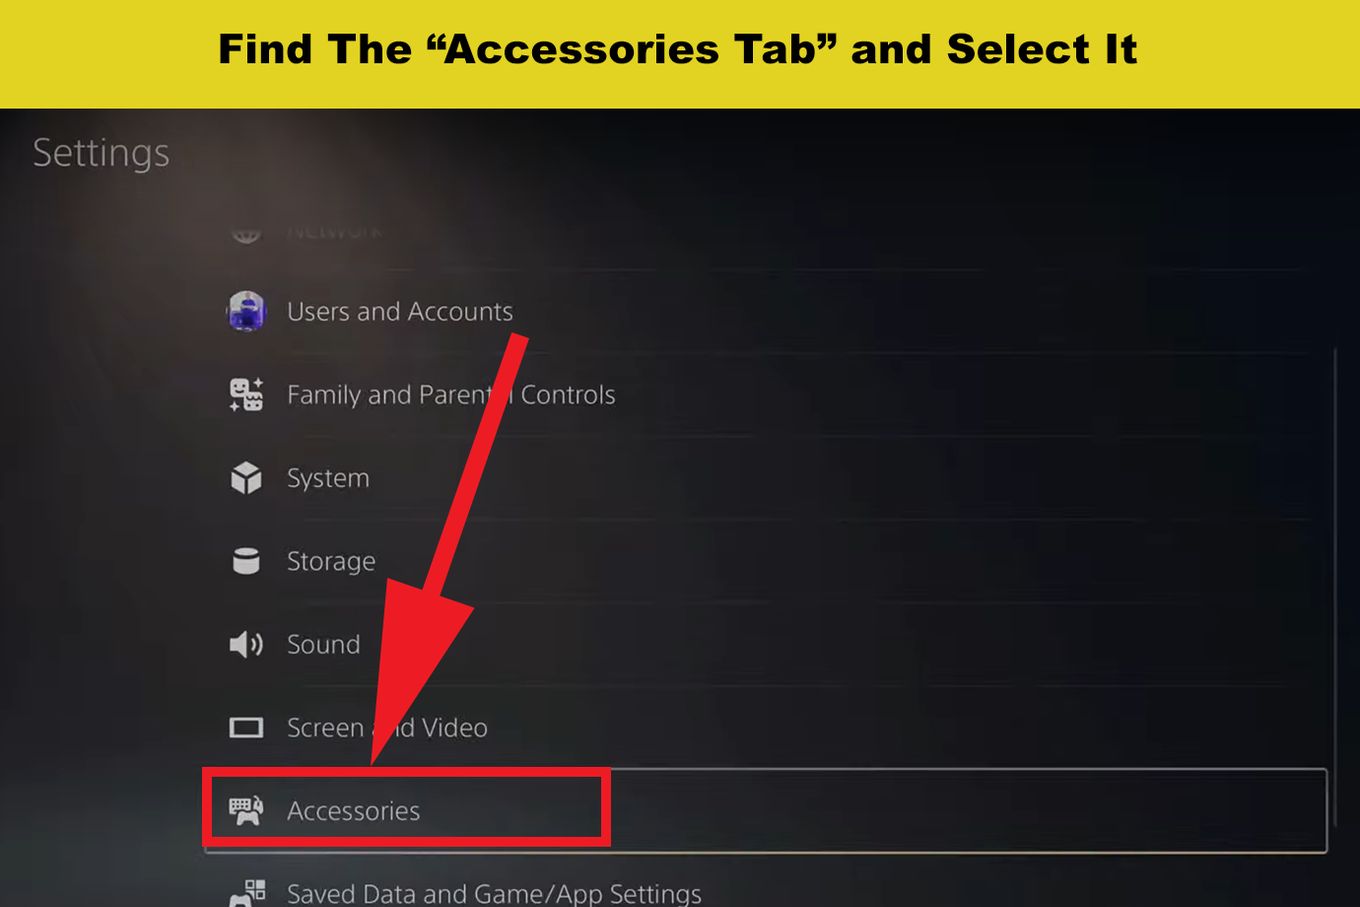 Accessories Tab